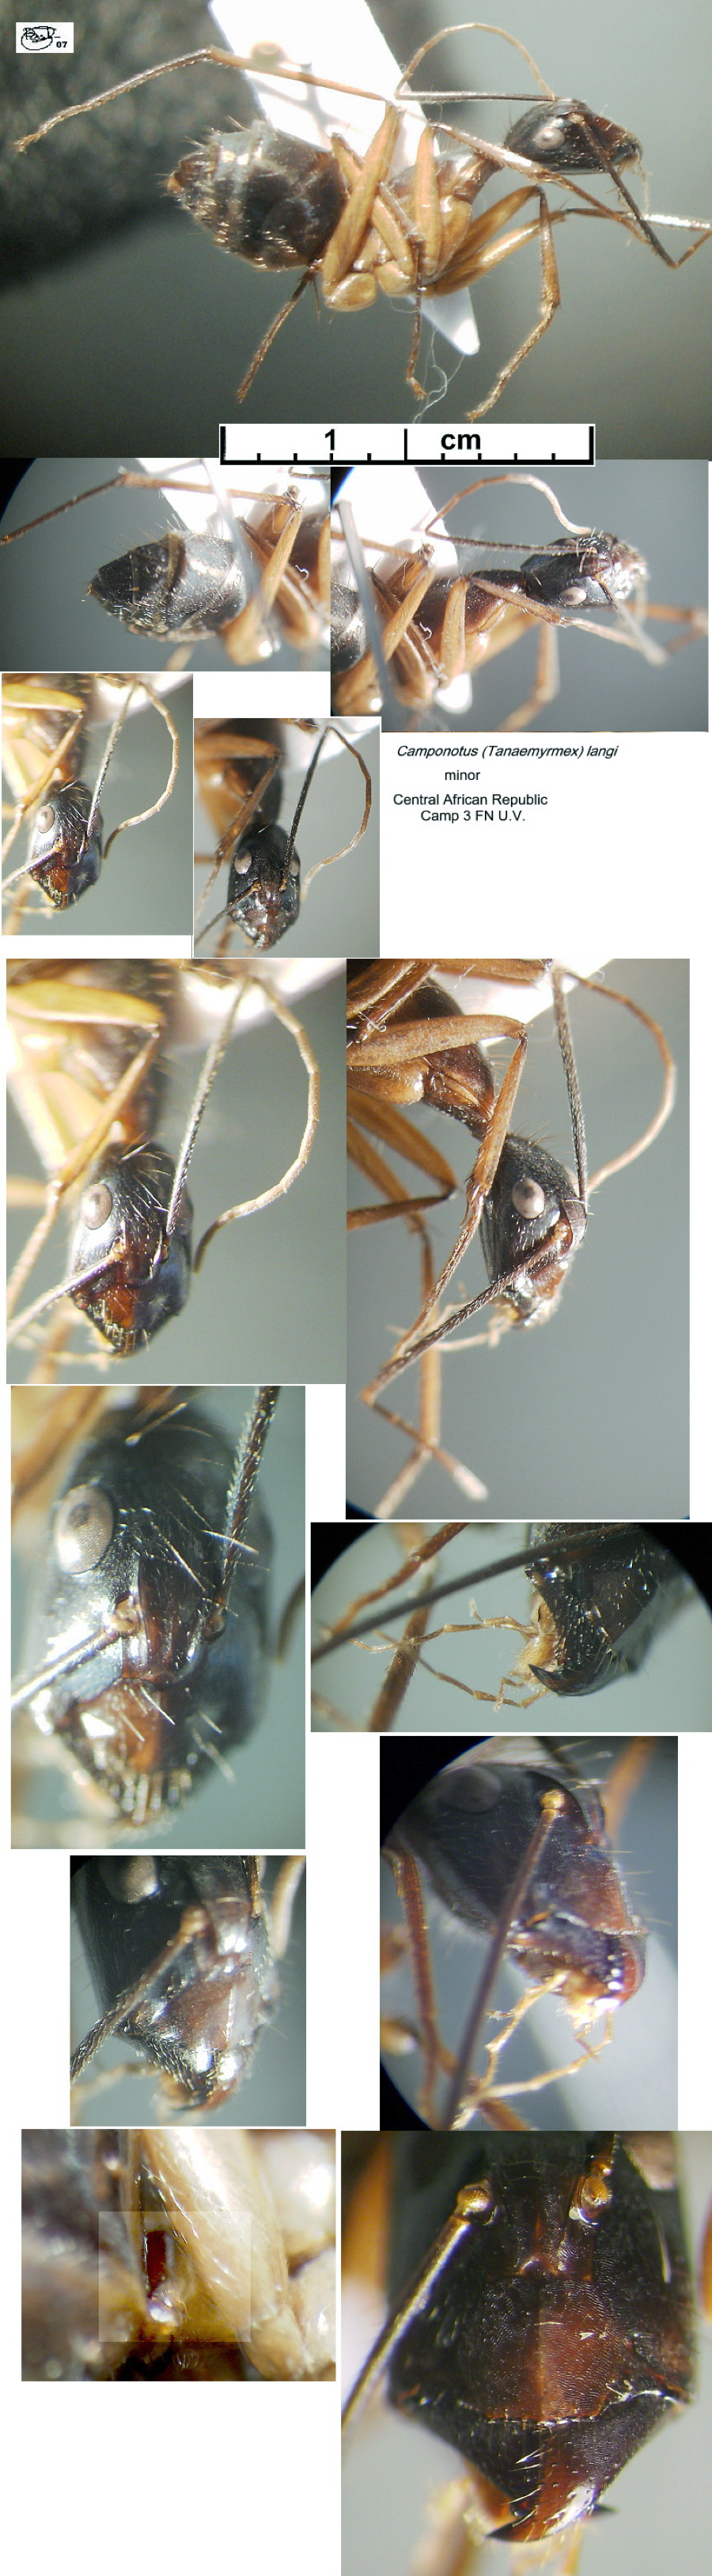 Camponotus langi